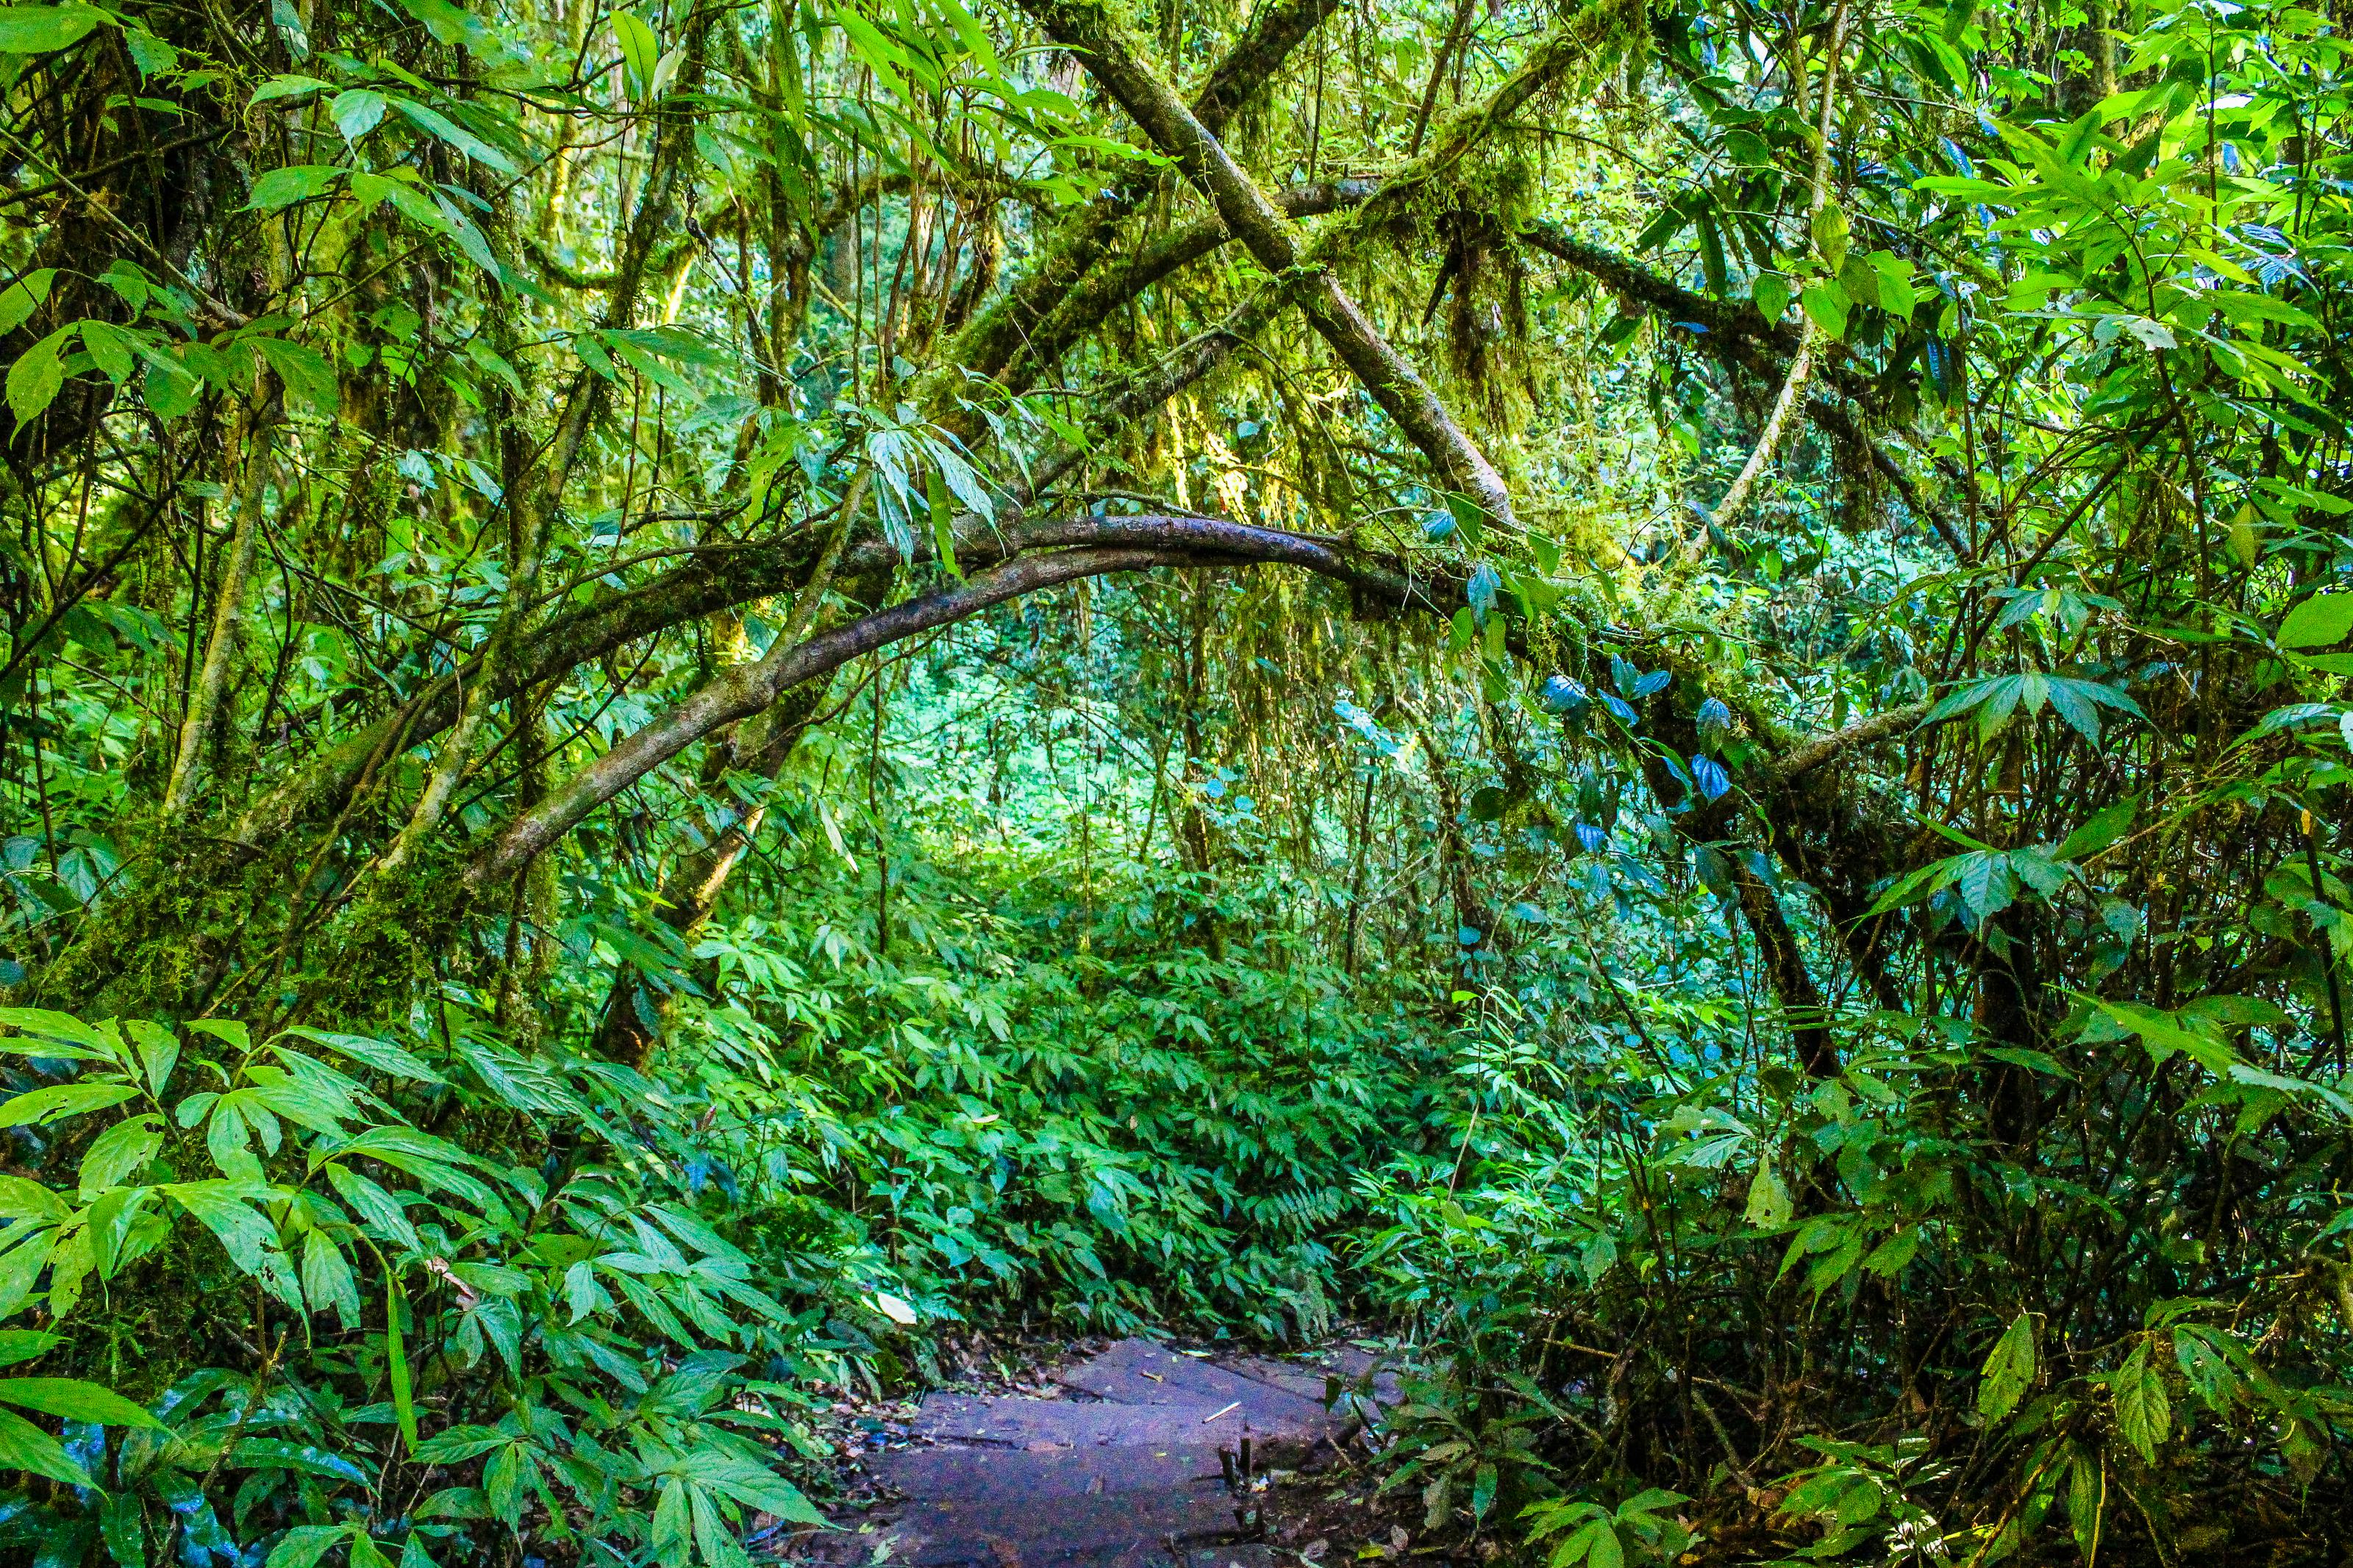 ジャングル ジャングルの壁紙 ジャングルの背景 小径 屋外 日光 木 枝 森の中 森の壁紙 森の背景 森林 植物 環境 田舎 経路 絶景 自然 農村 雨林の無料の写真素材